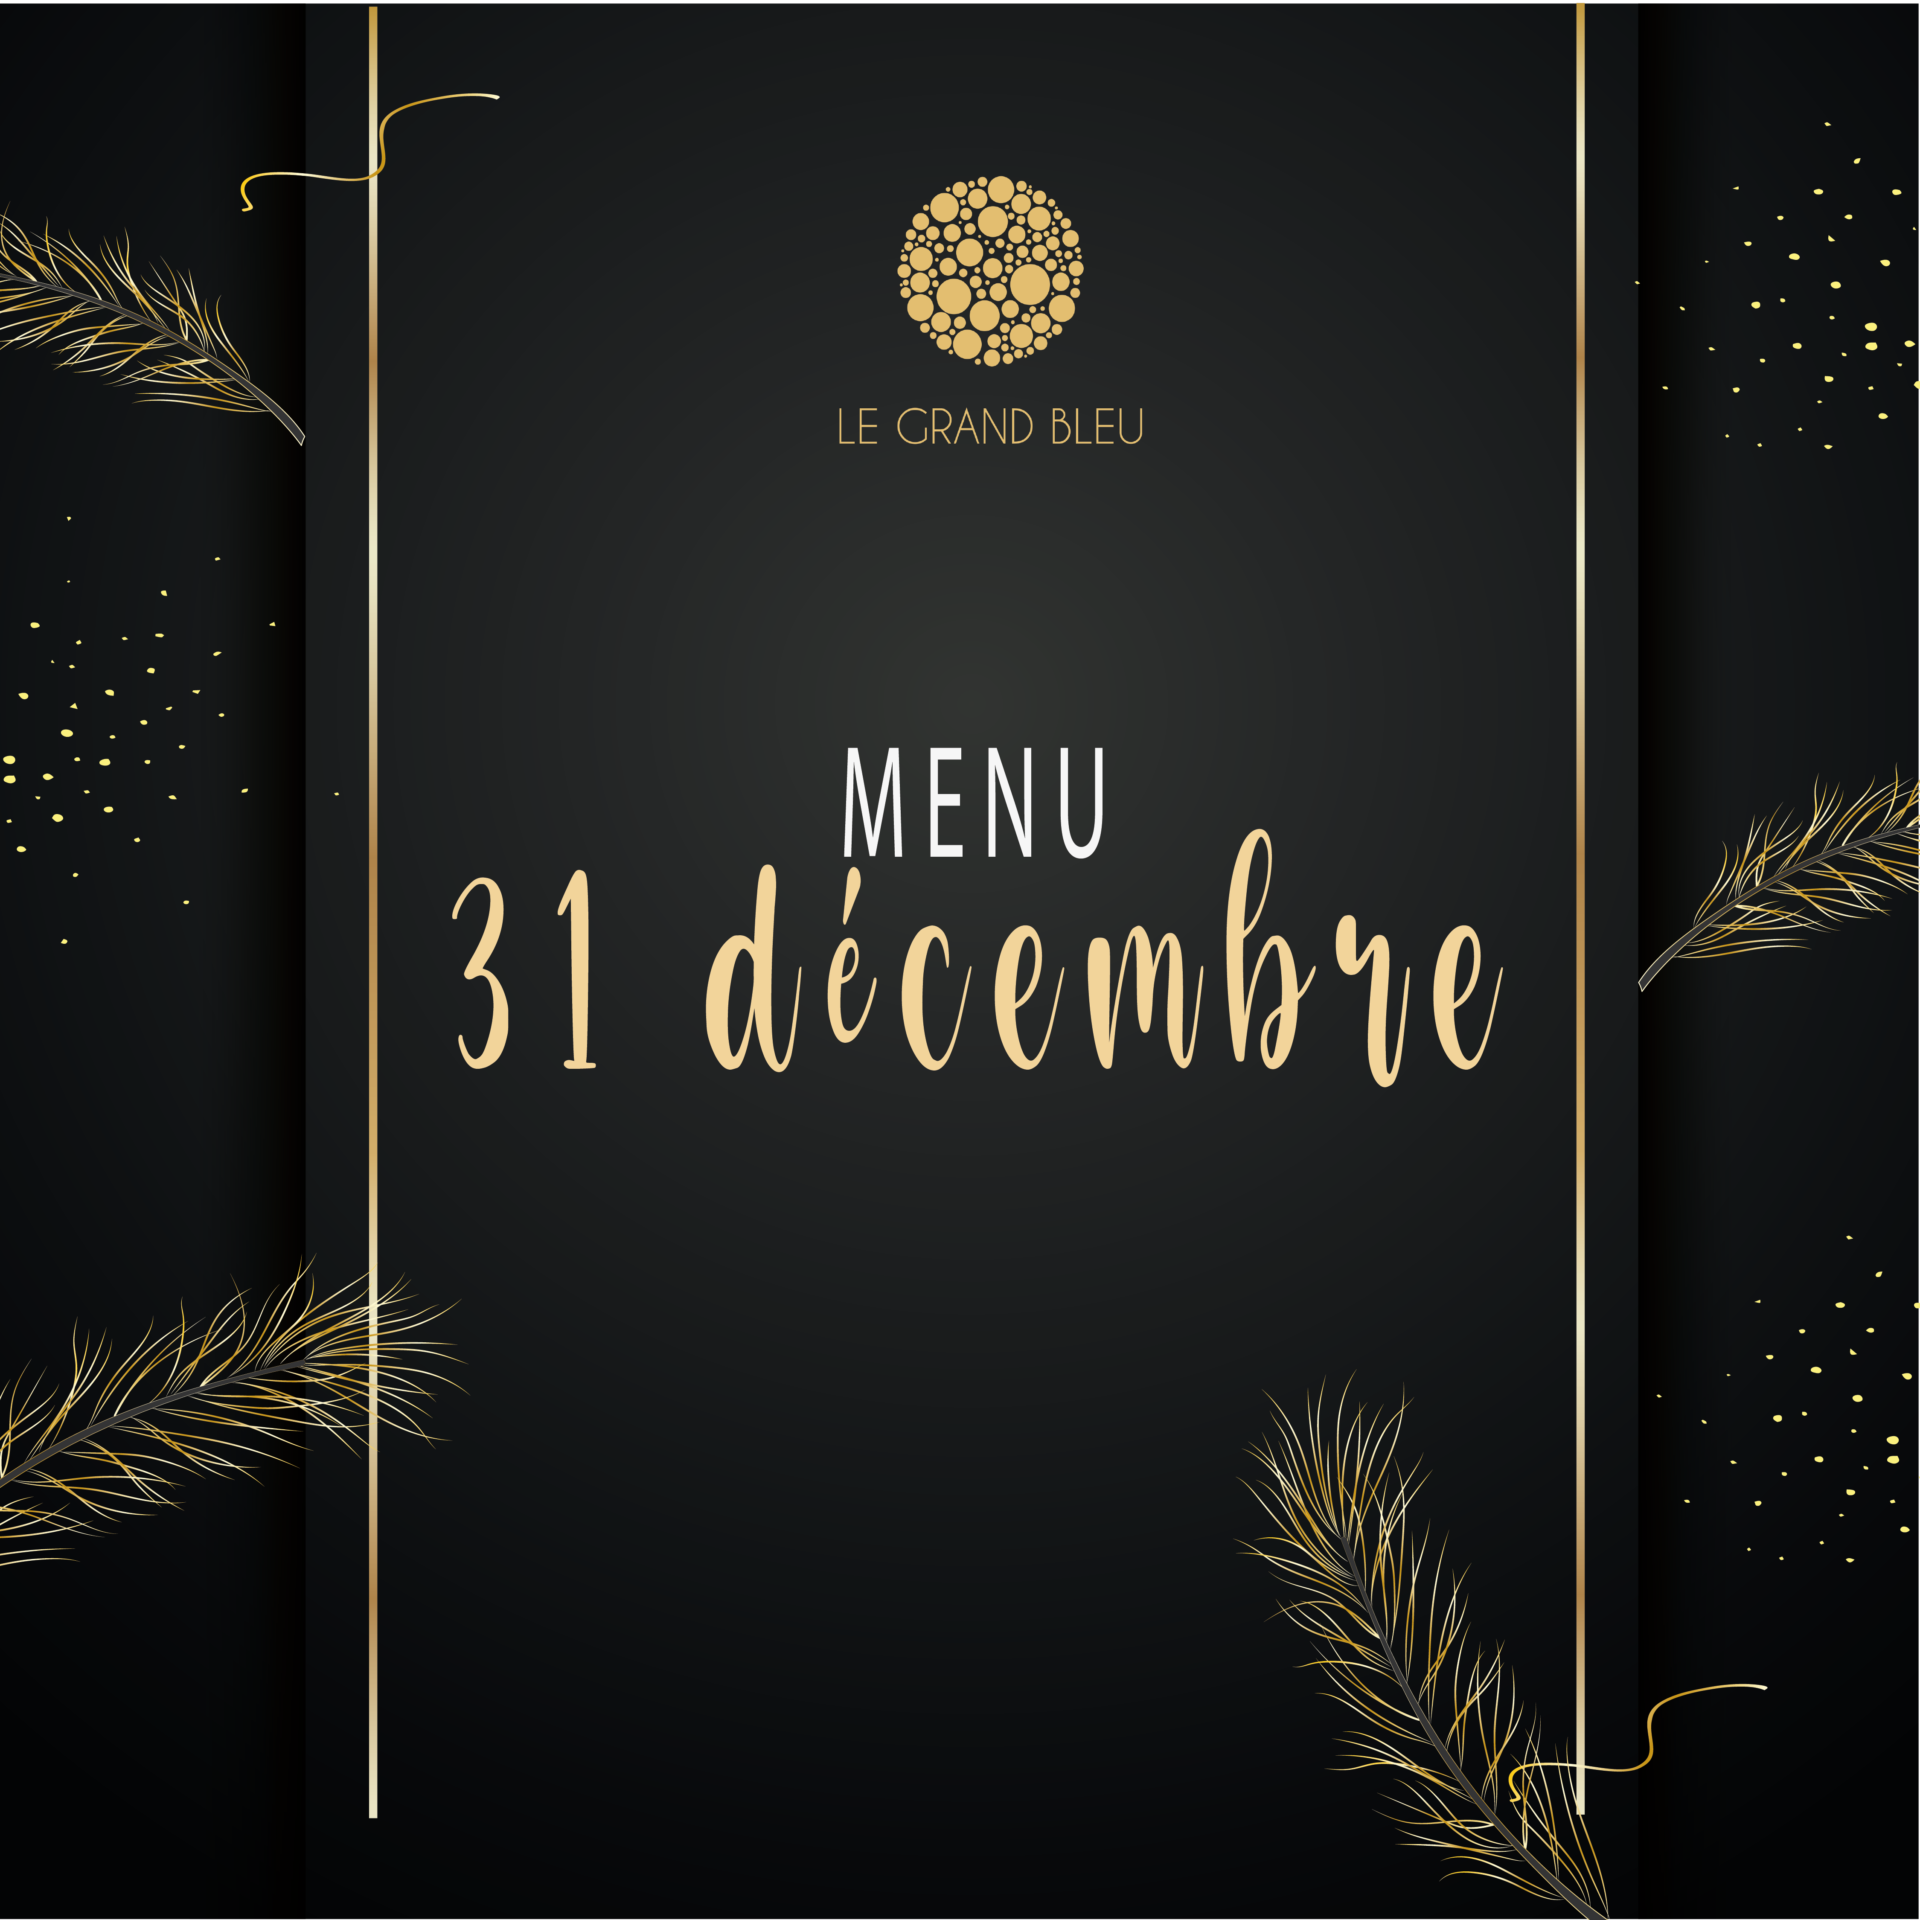 Découvrez notre menu du 31 décembre !